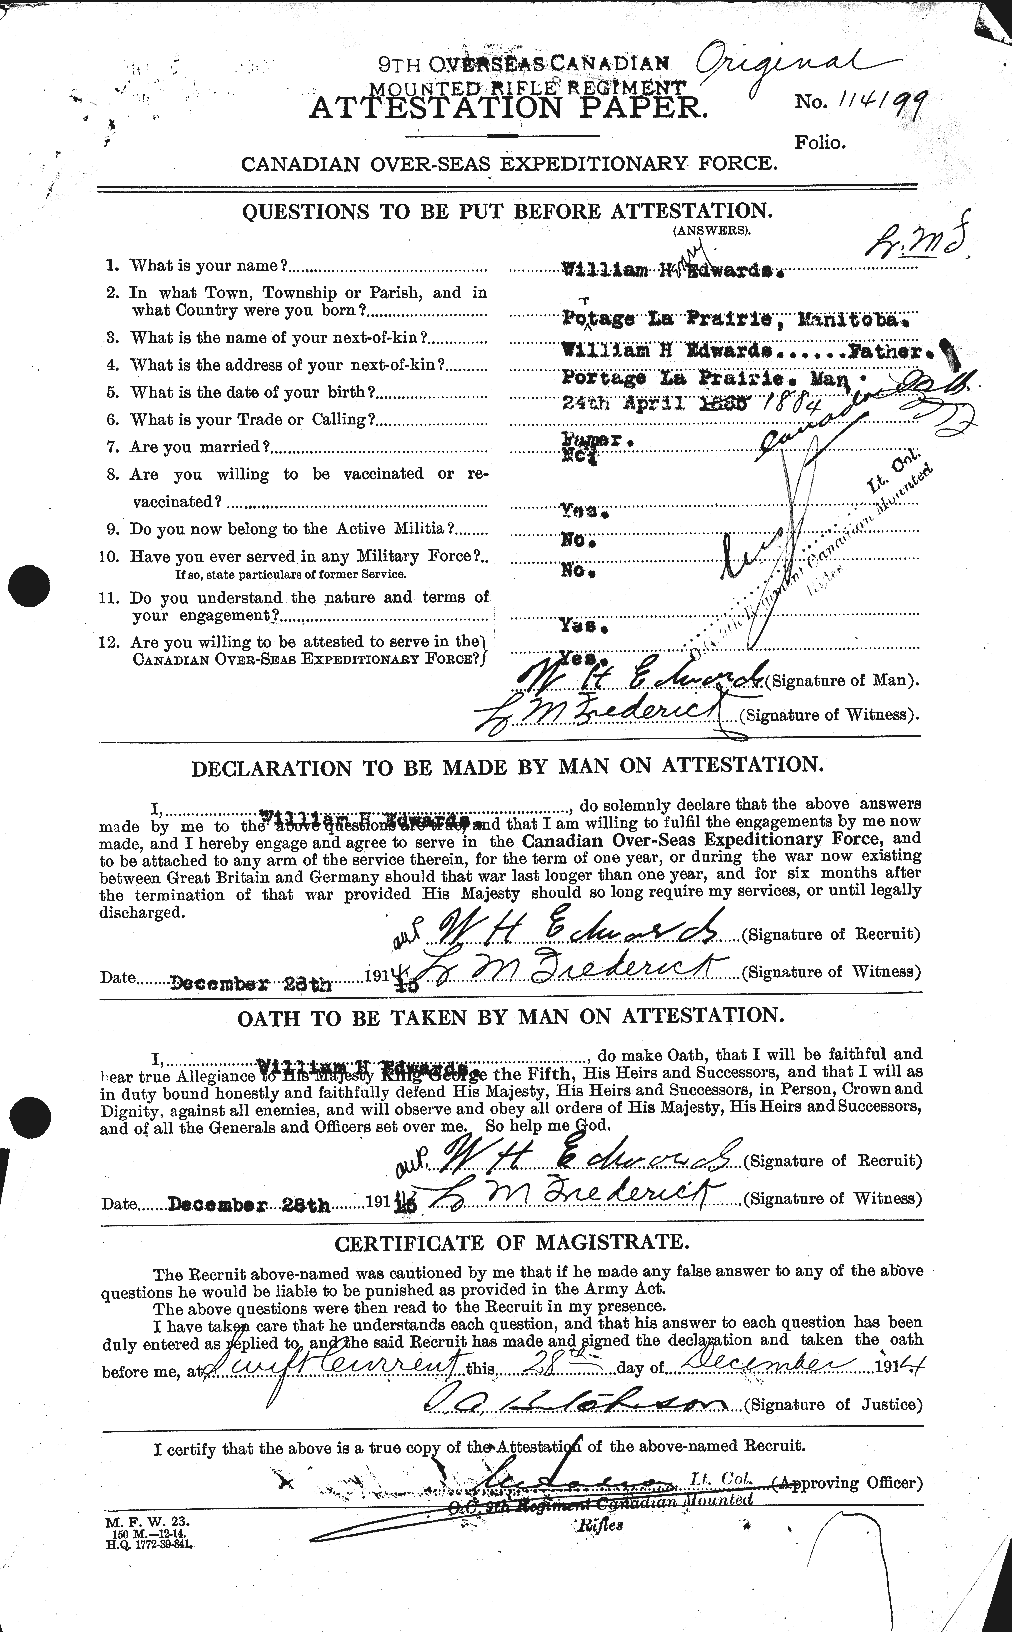 Dossiers du Personnel de la Première Guerre mondiale - CEC 310435a